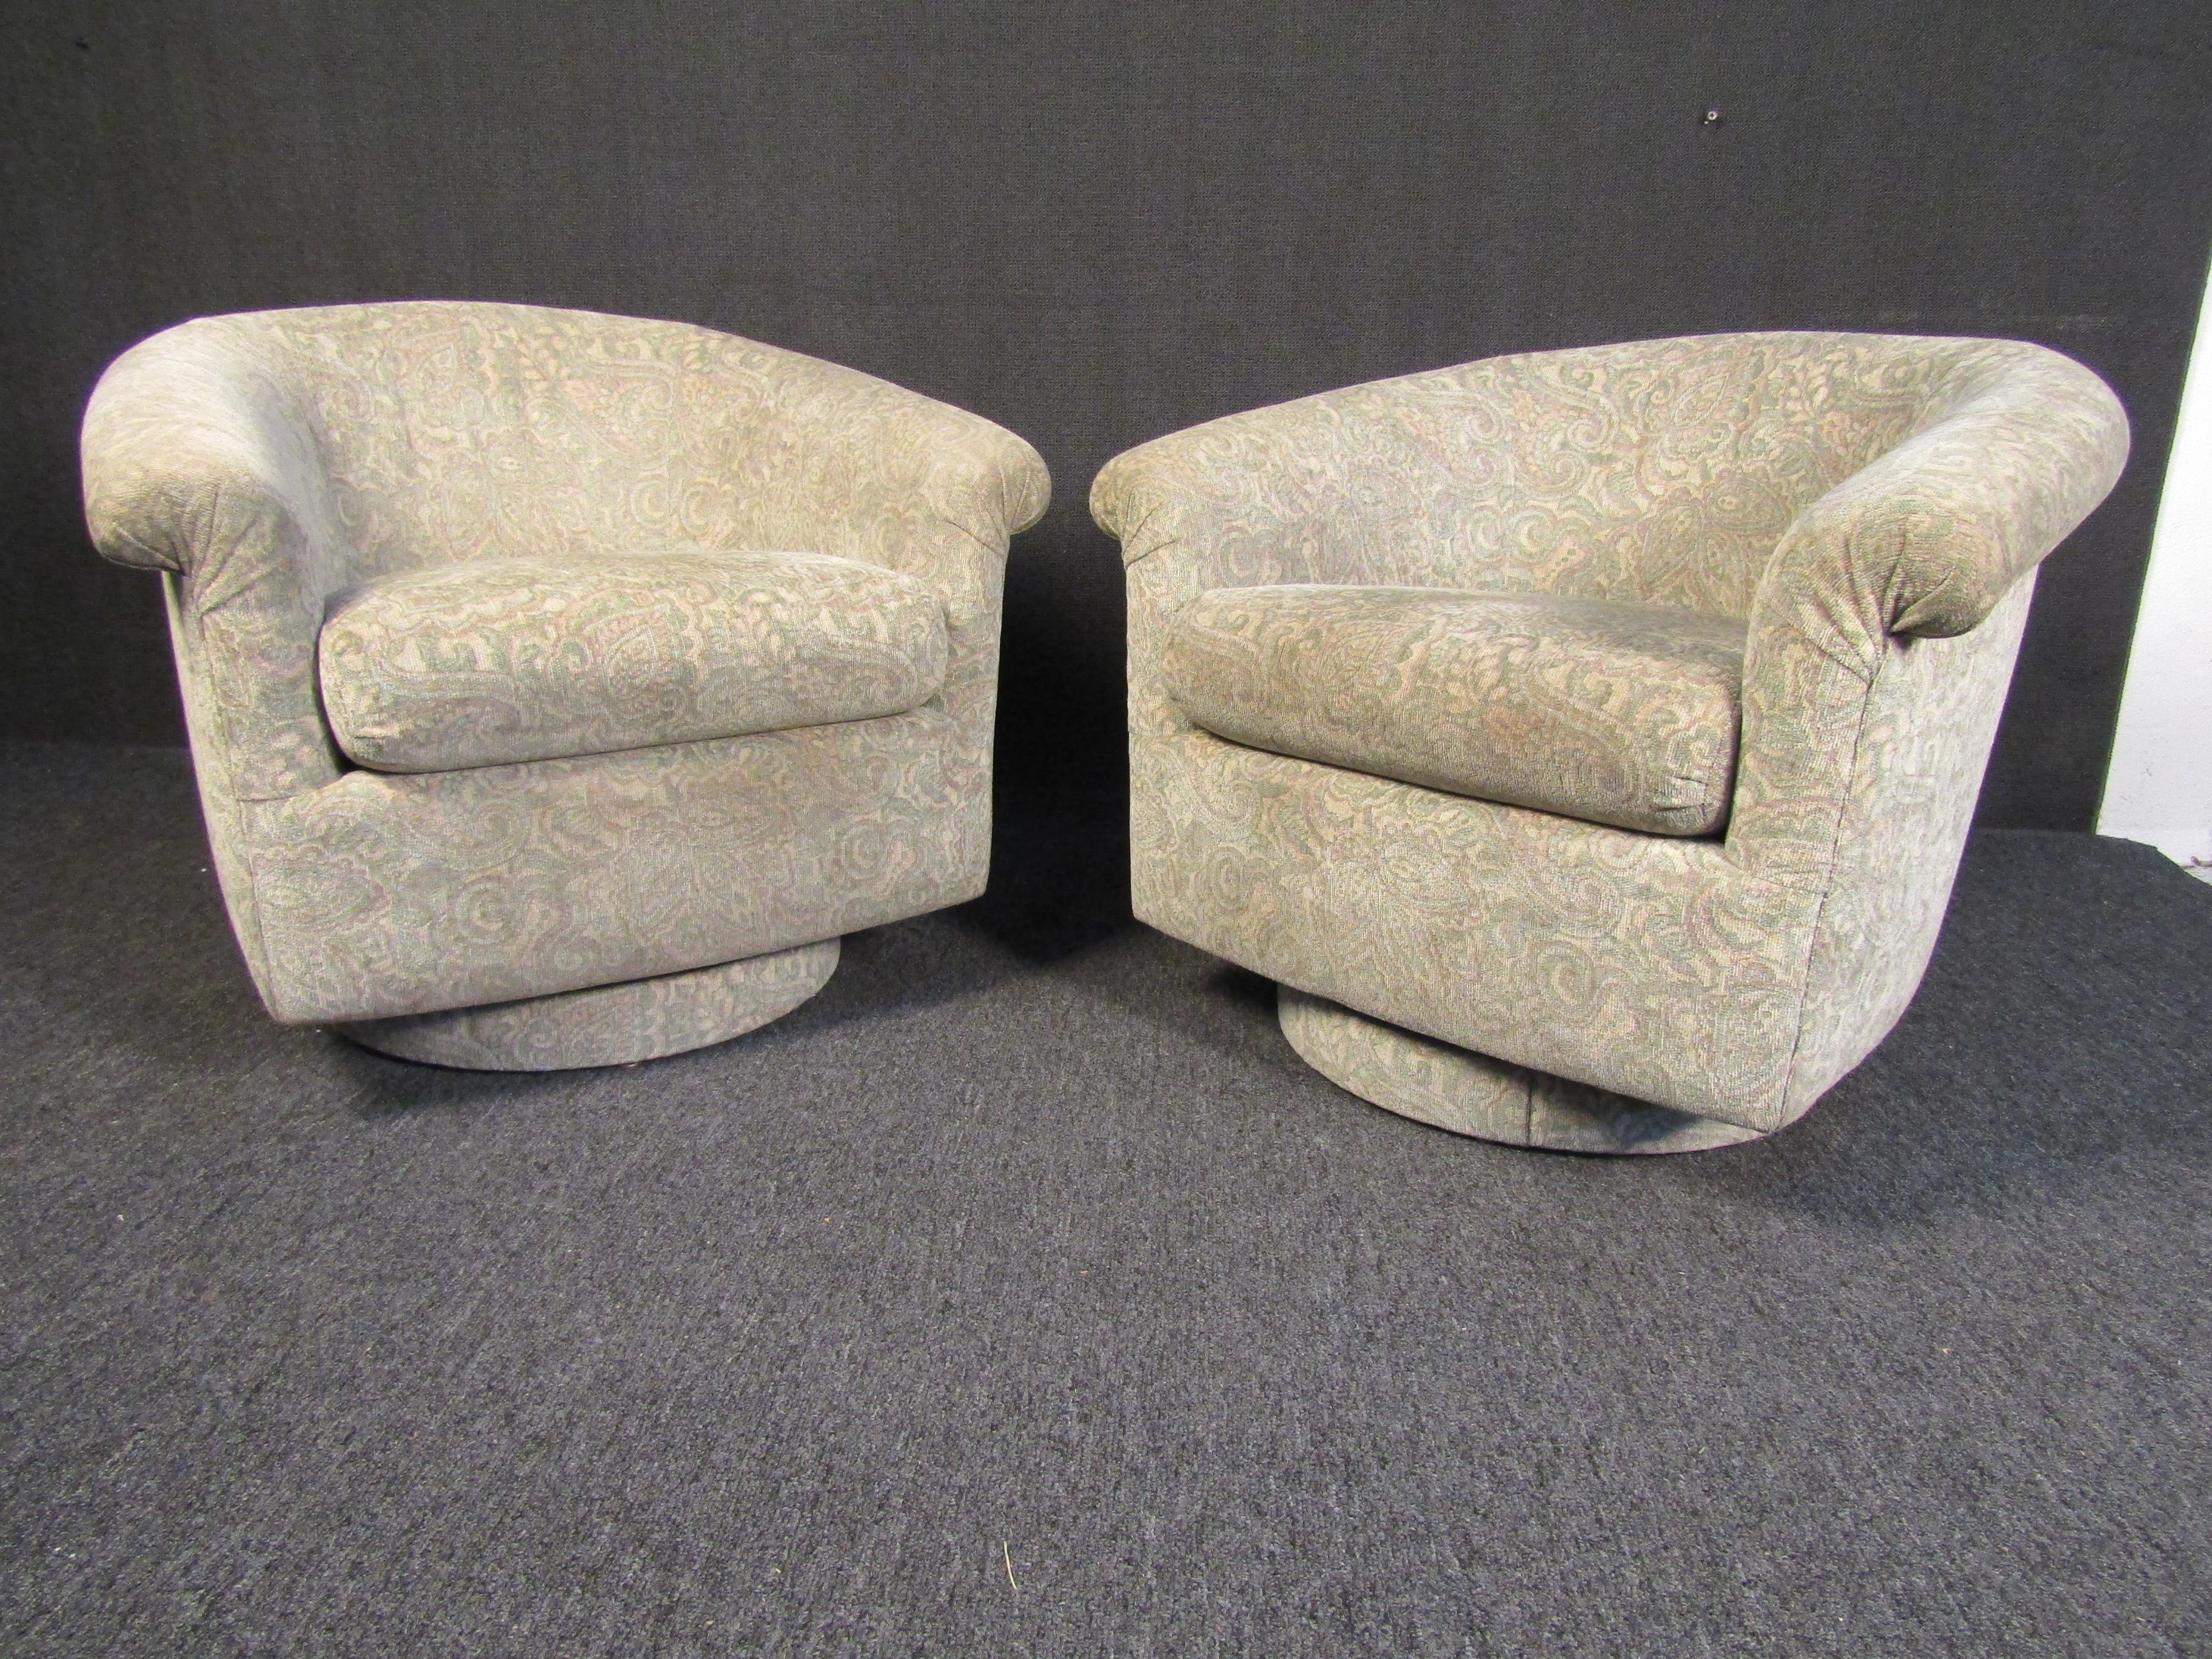 Ein Paar stilvolle Mid-Century Modern Sessel, die mit einem attraktiven beigen Stoff gepolstert sind und bequemes Sitzen ermöglichen. Dieses Paar Vintage-Stühle ist perfekt für ein Wohnzimmer, ein Büro oder eine ruhige Leseecke. Bitte bestätigen Sie